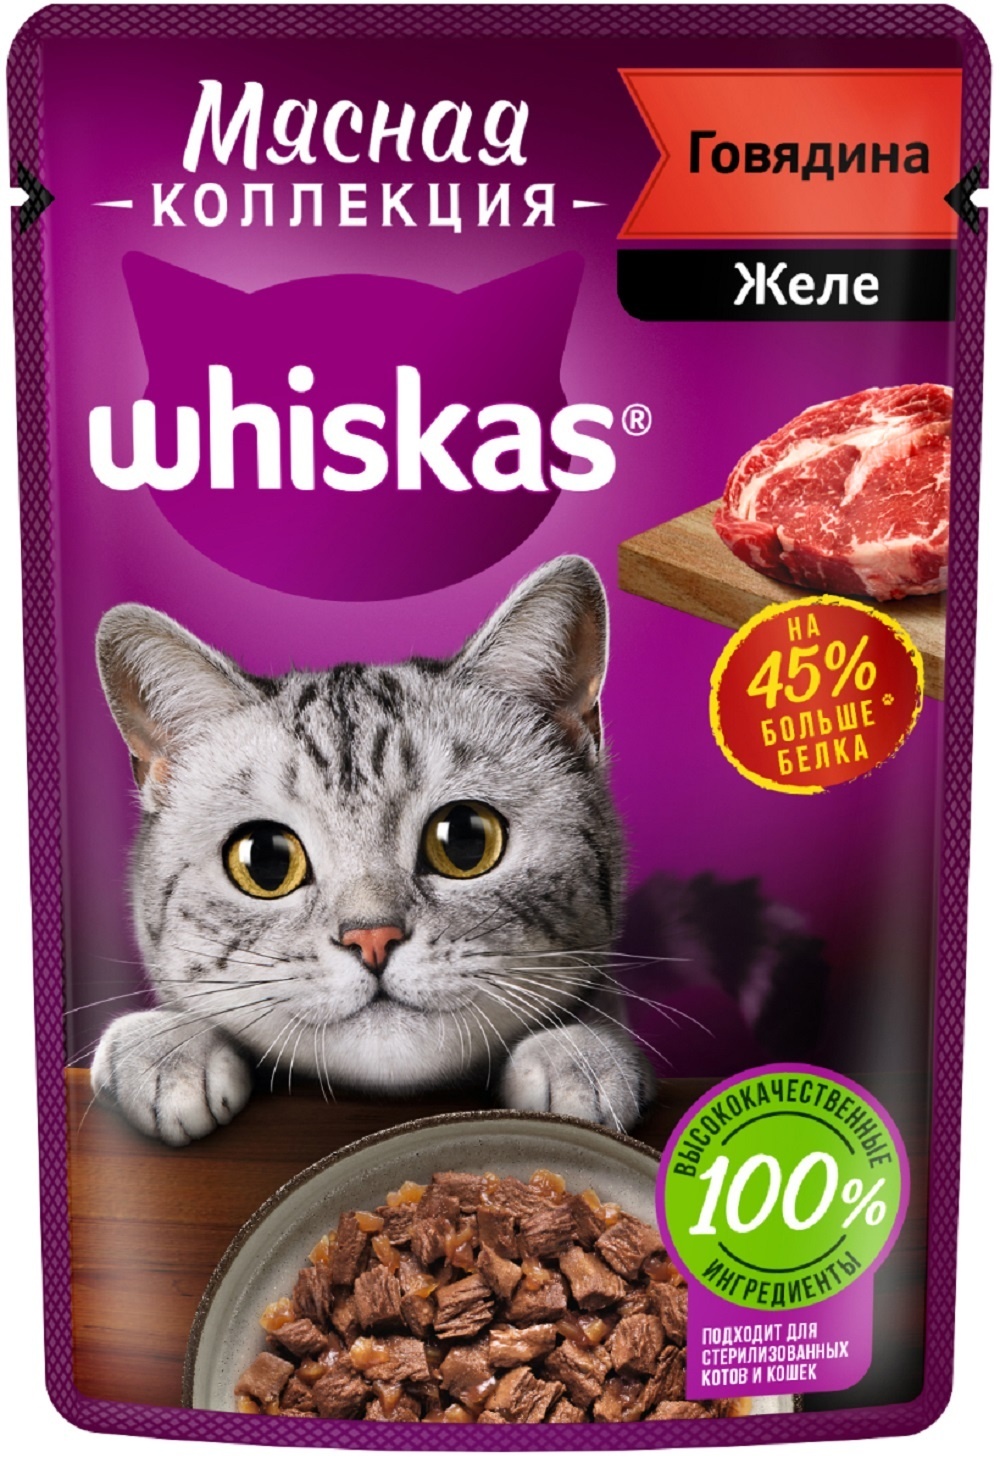 Whiskas Whiskas влажный корм «Мясная коллекция» для кошек, с говядиной (75 г) влажный корм whiskas мясная коллекция для кошек с курицей 28 шт по 75 г